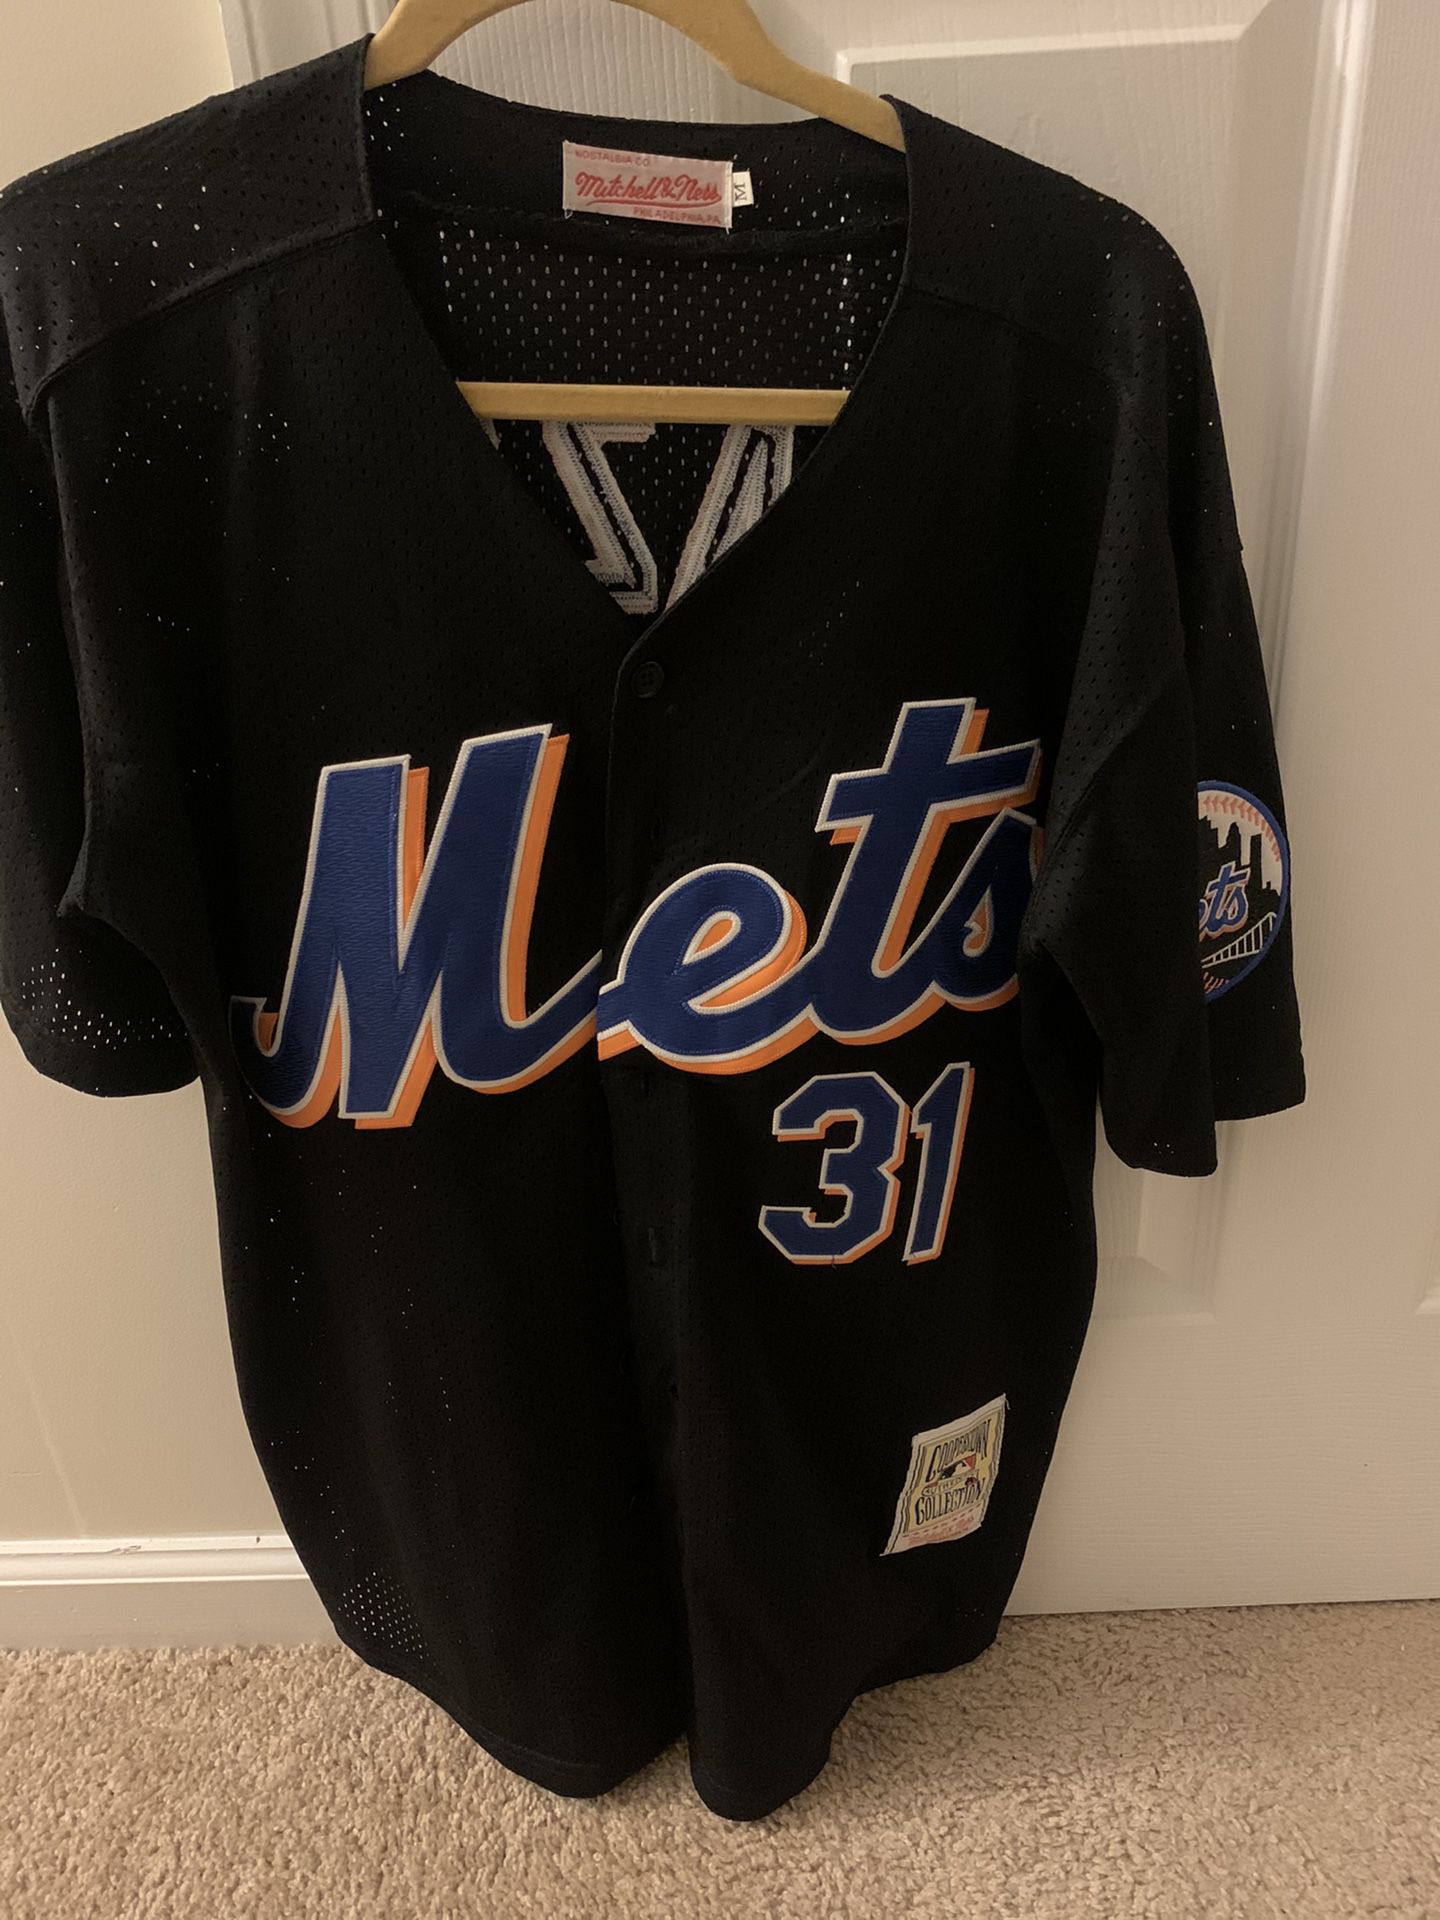 NY Mets Baseball jersey